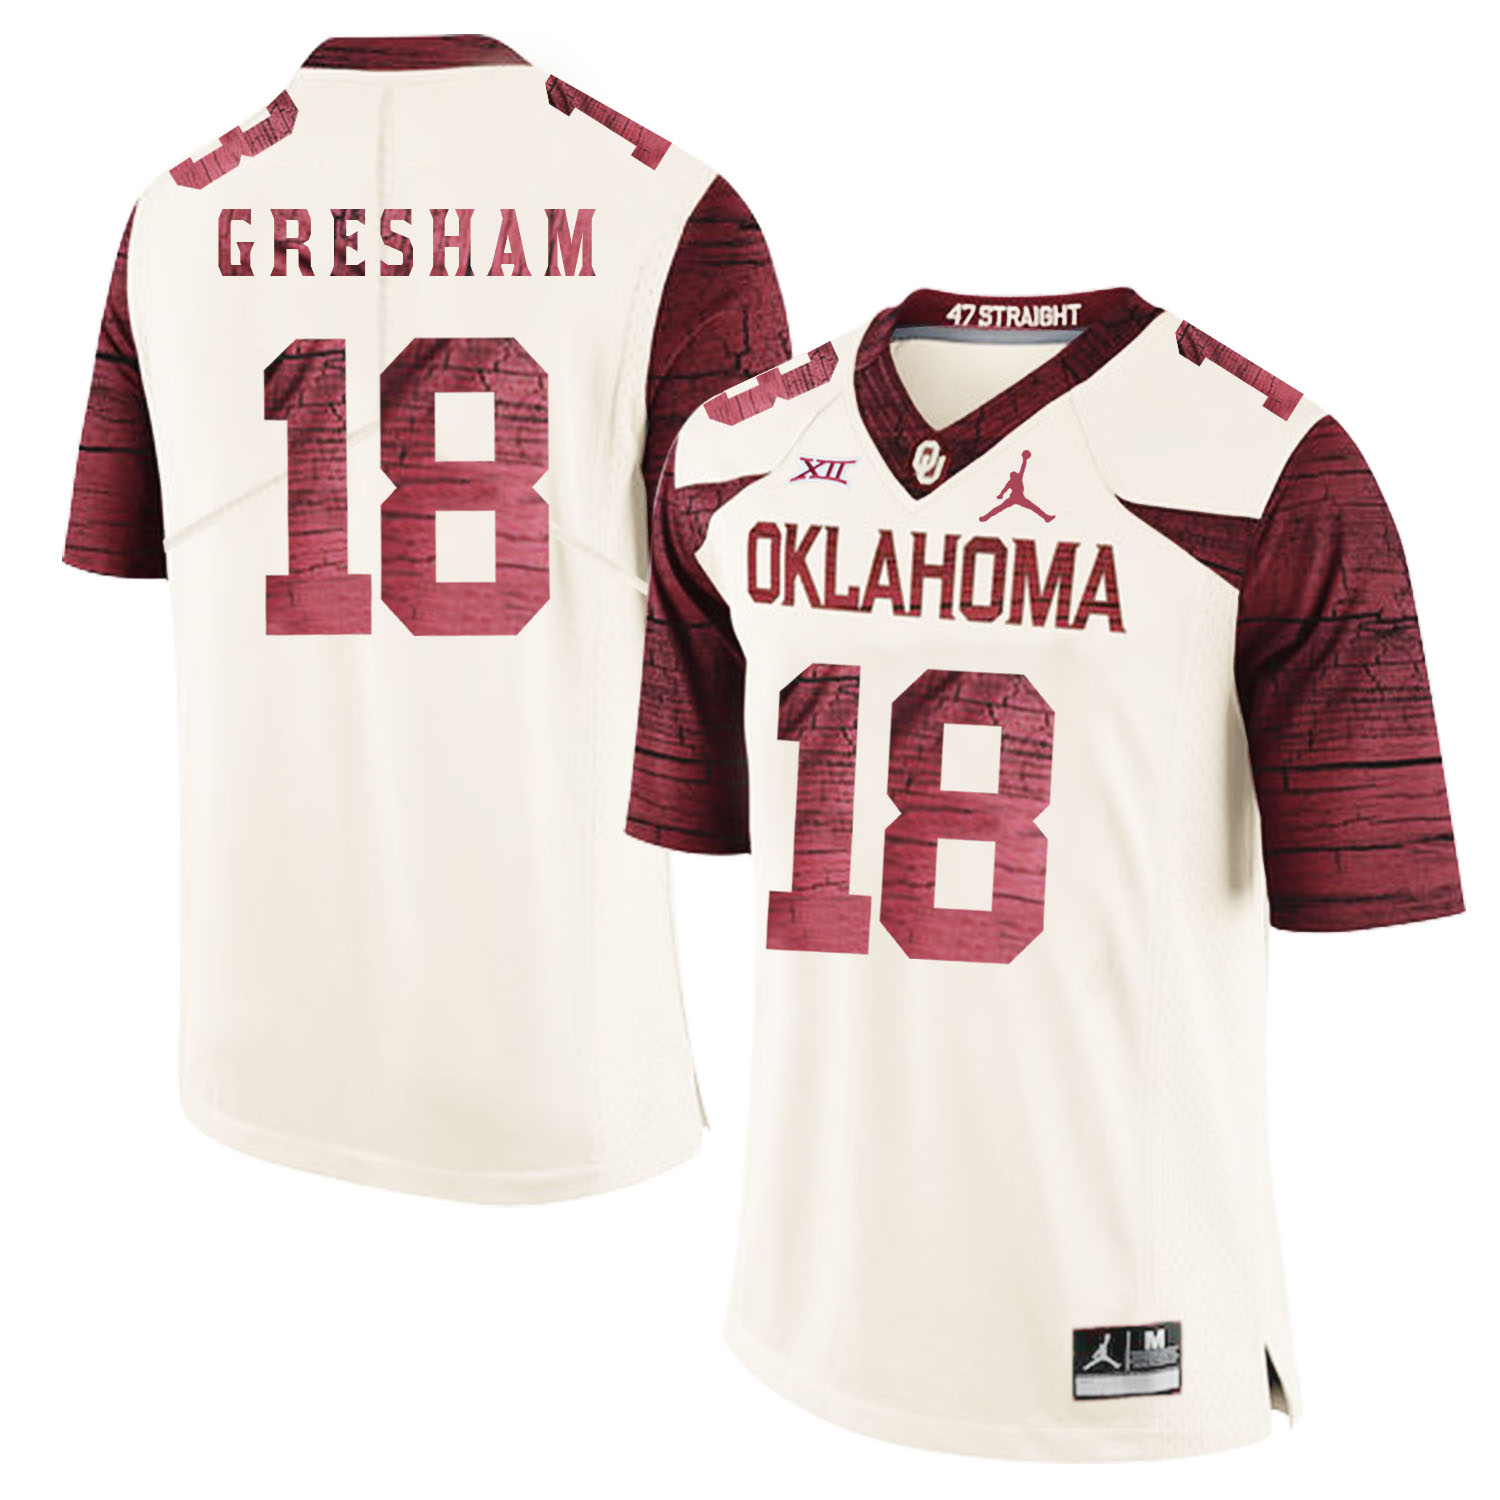 Oklahoma Sooners 18 Jermaine Gresham White 47 Game Winning Streak College Football Jersey